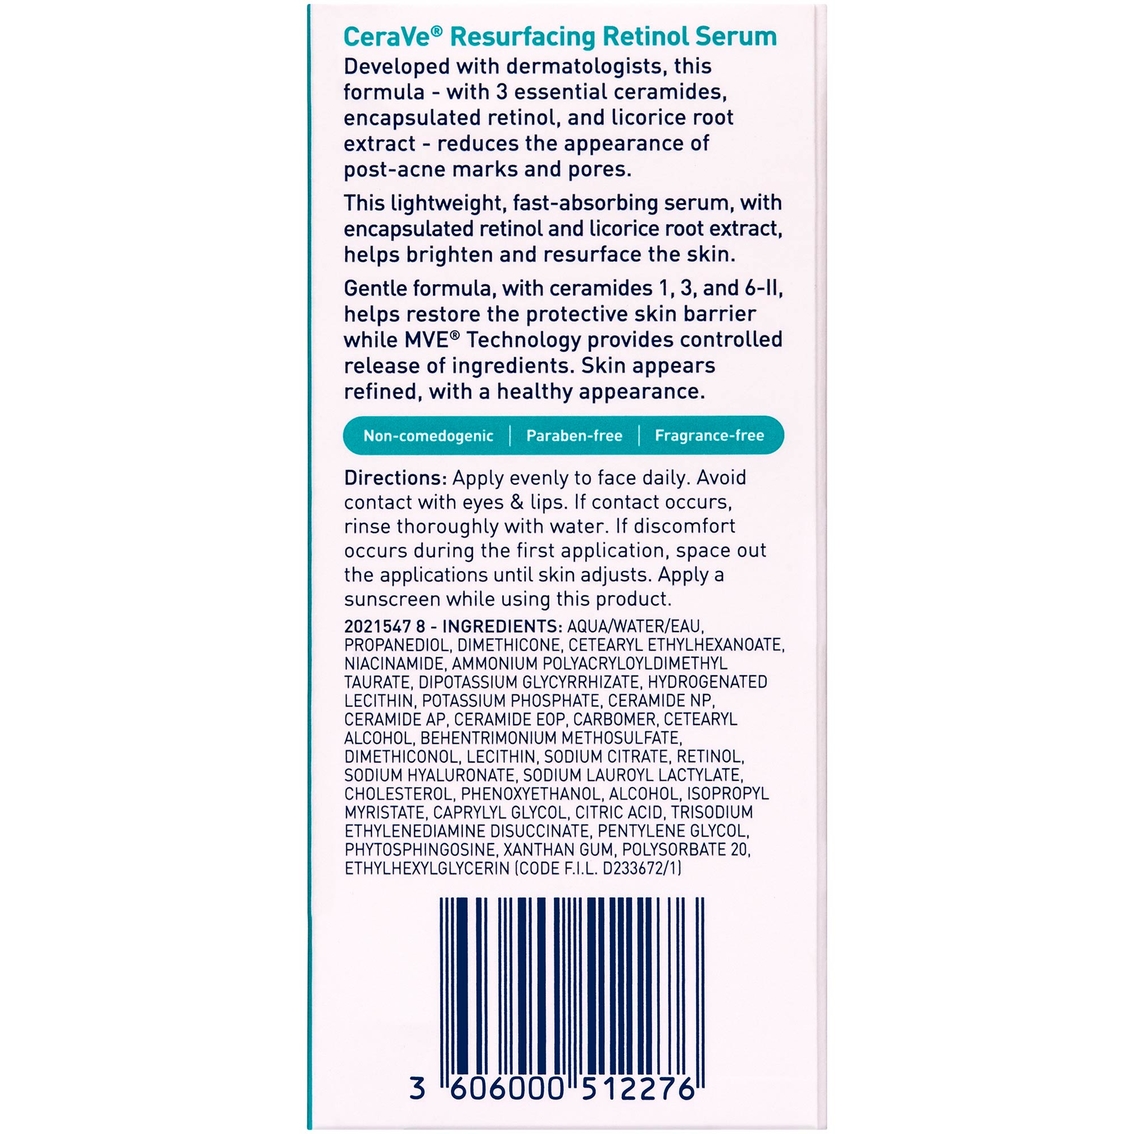 CeraVe Resurfacing Retinol Serum 1 oz. - Image 3 of 7